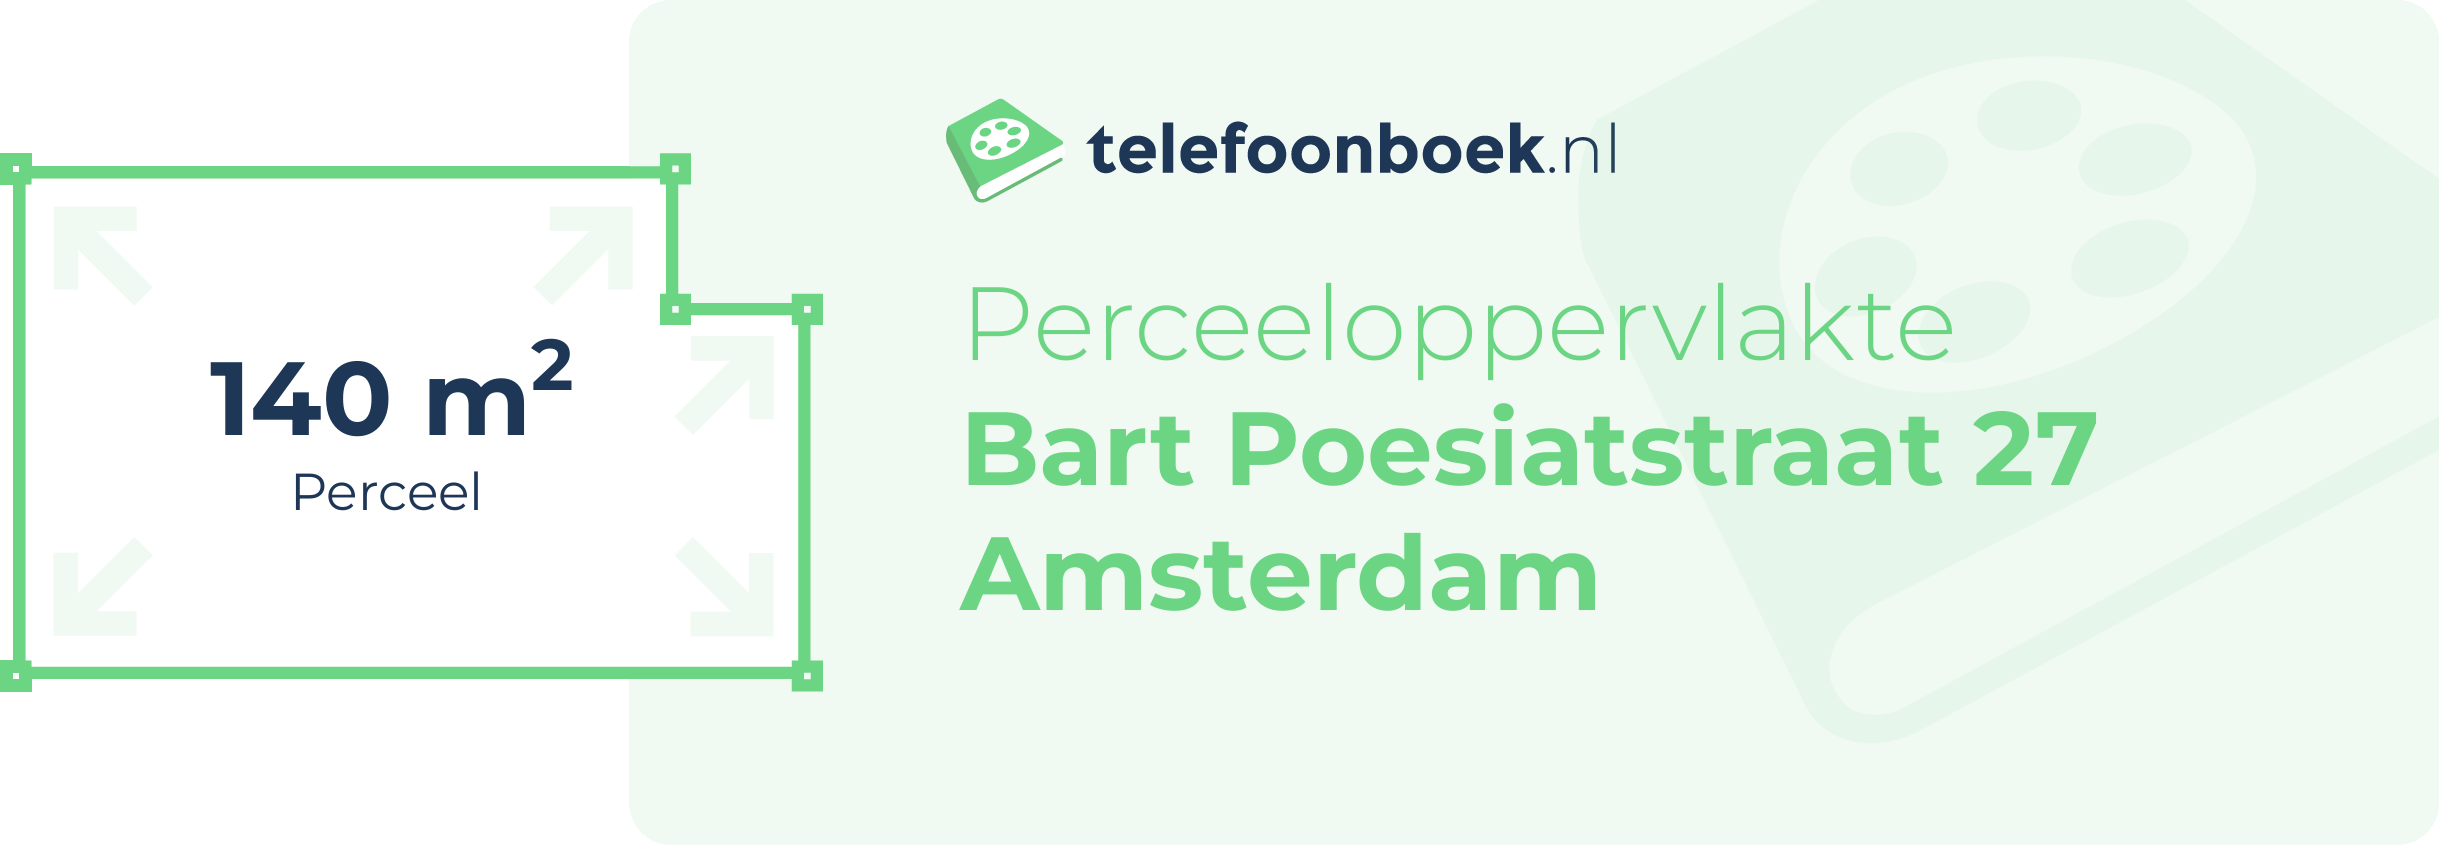 Perceeloppervlakte Bart Poesiatstraat 27 Amsterdam